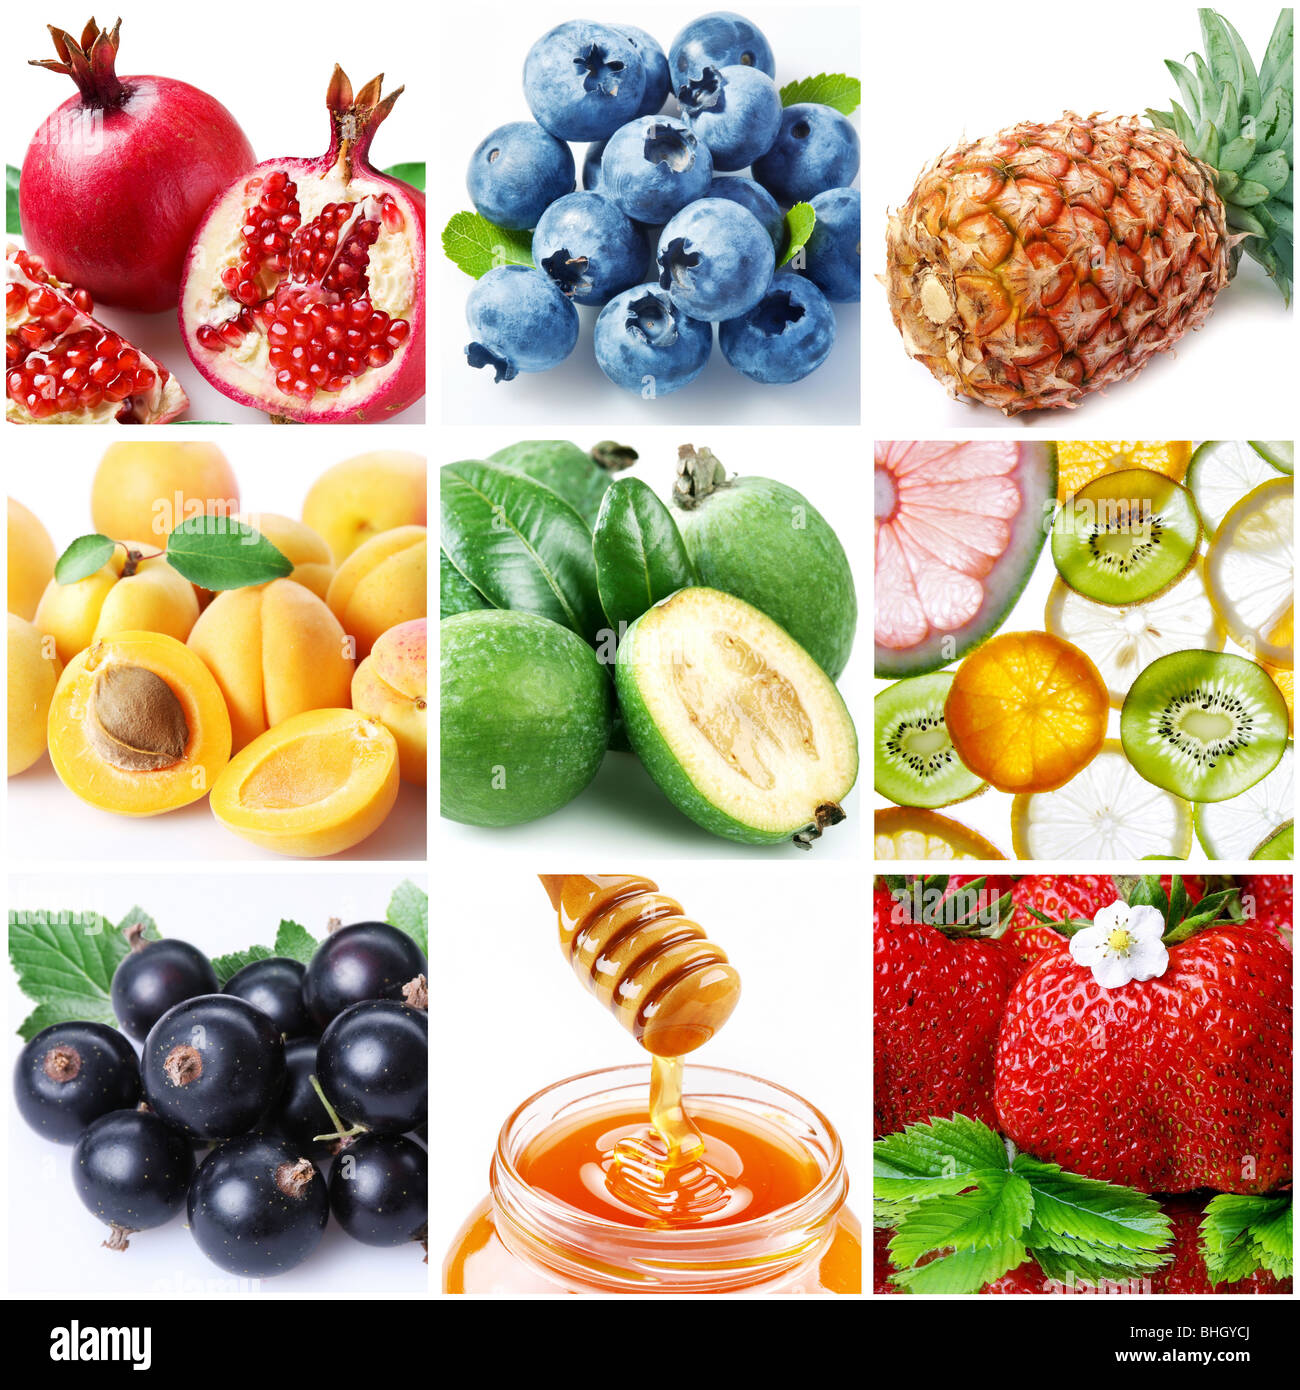 Sammlung von Bildern zum Thema "Obst" Stockfoto